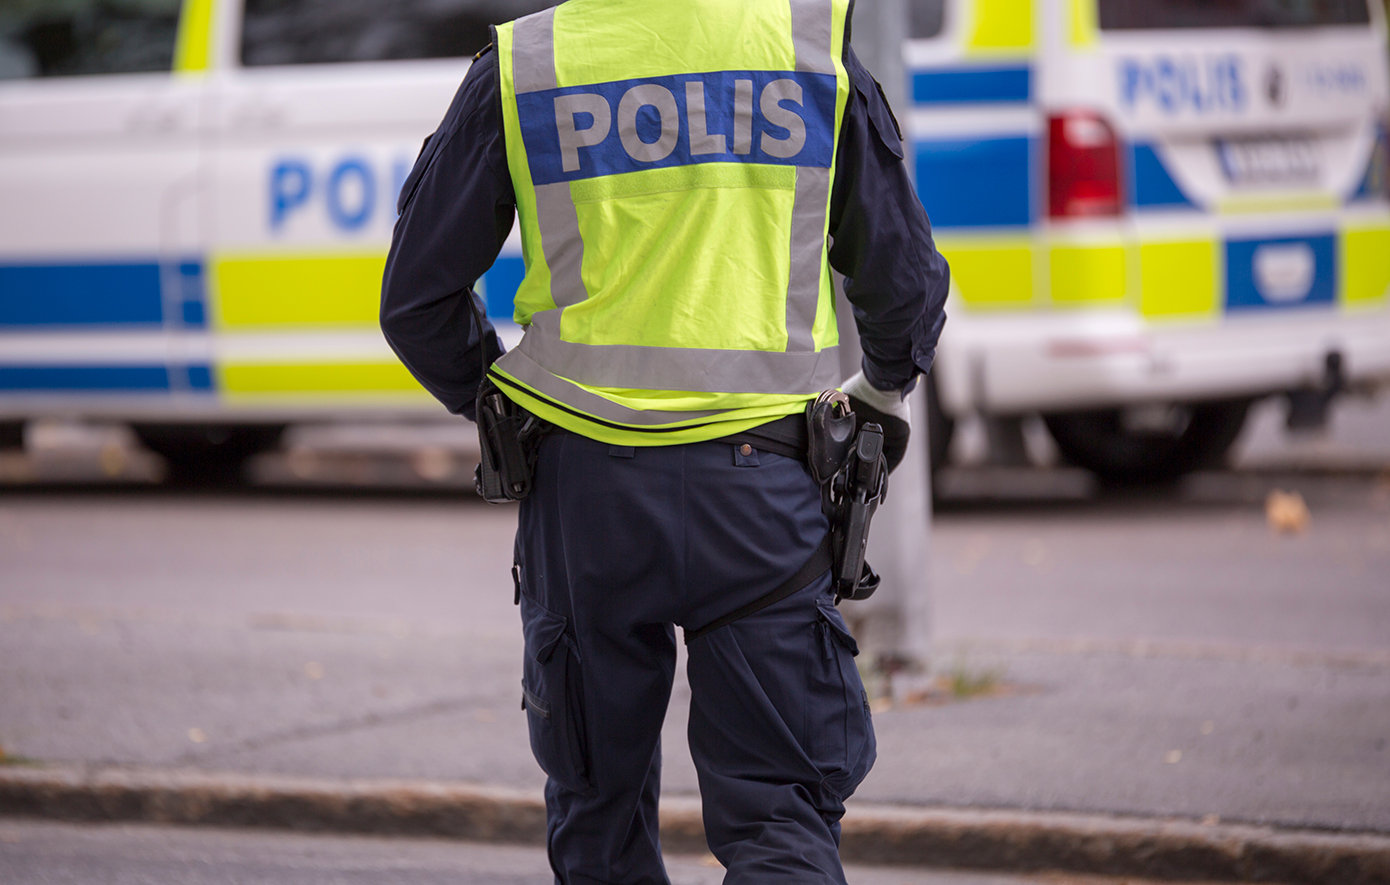 Εκατοντάδες διαδηλωτές στη Στοκχόλμη κατά της ακροδεξιάς – Η κατάσταση «είναι σοβαρή»